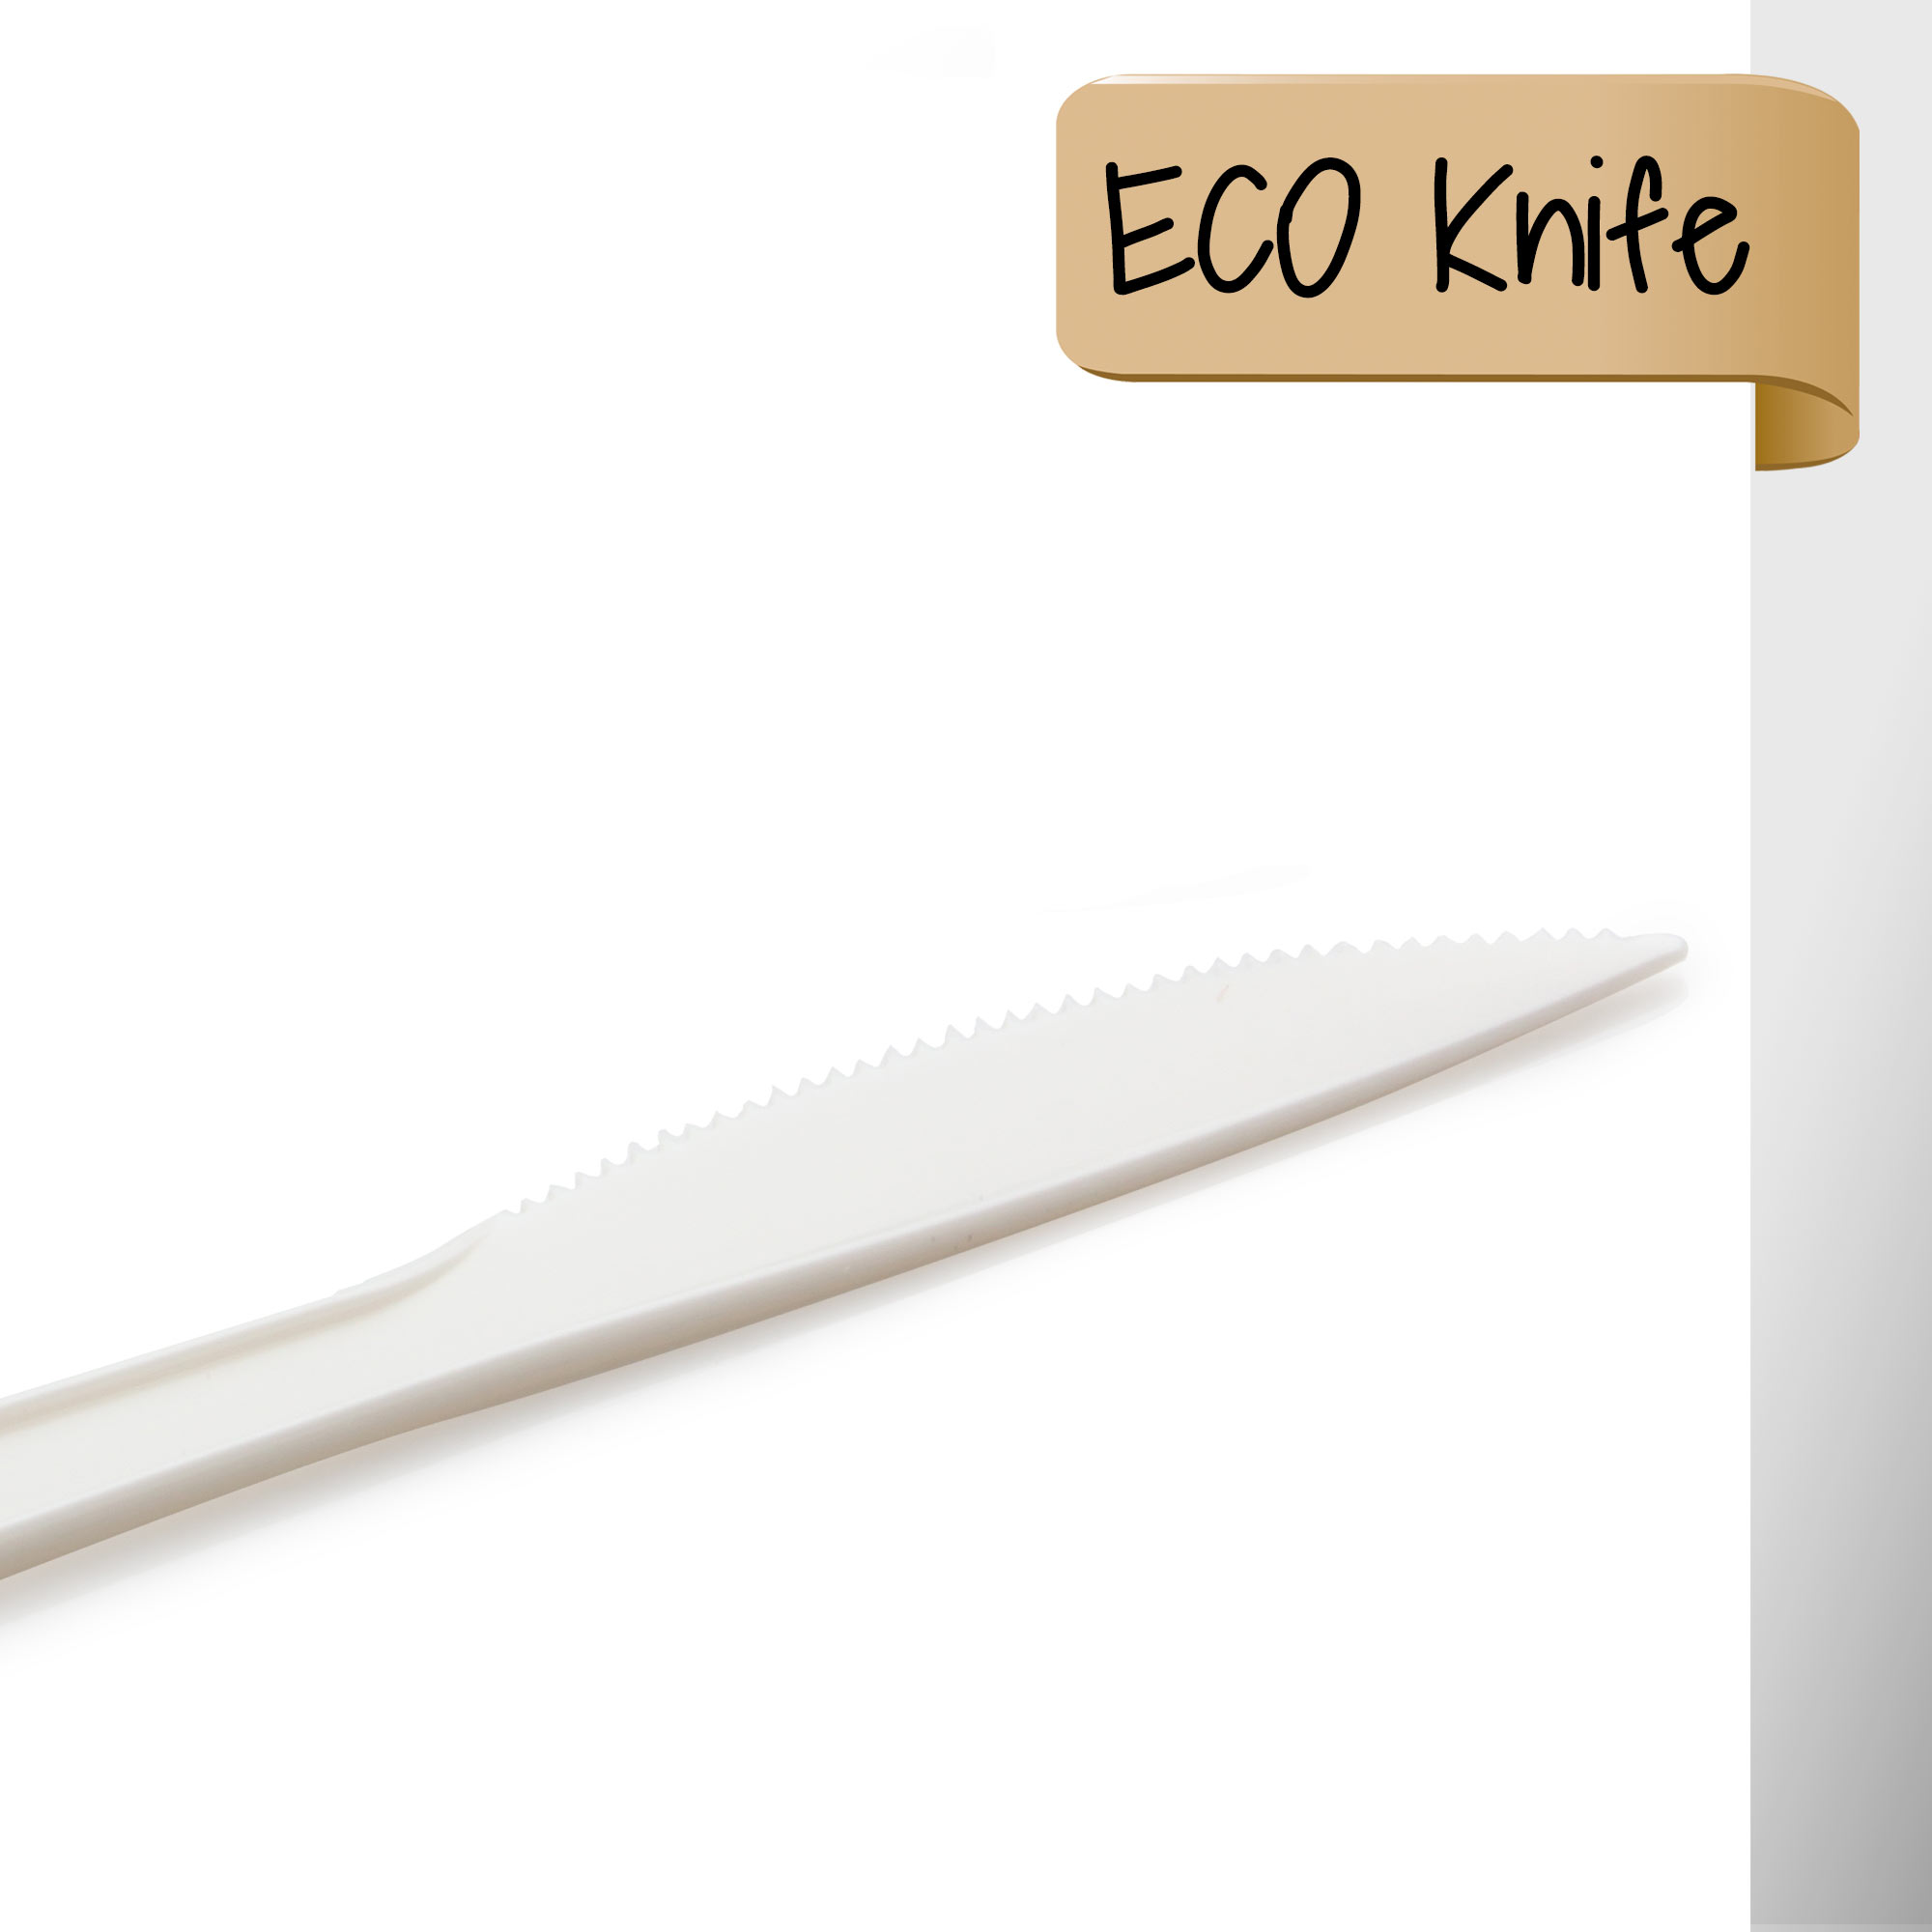 Biyolojik olarak parçalanabilen bıçak